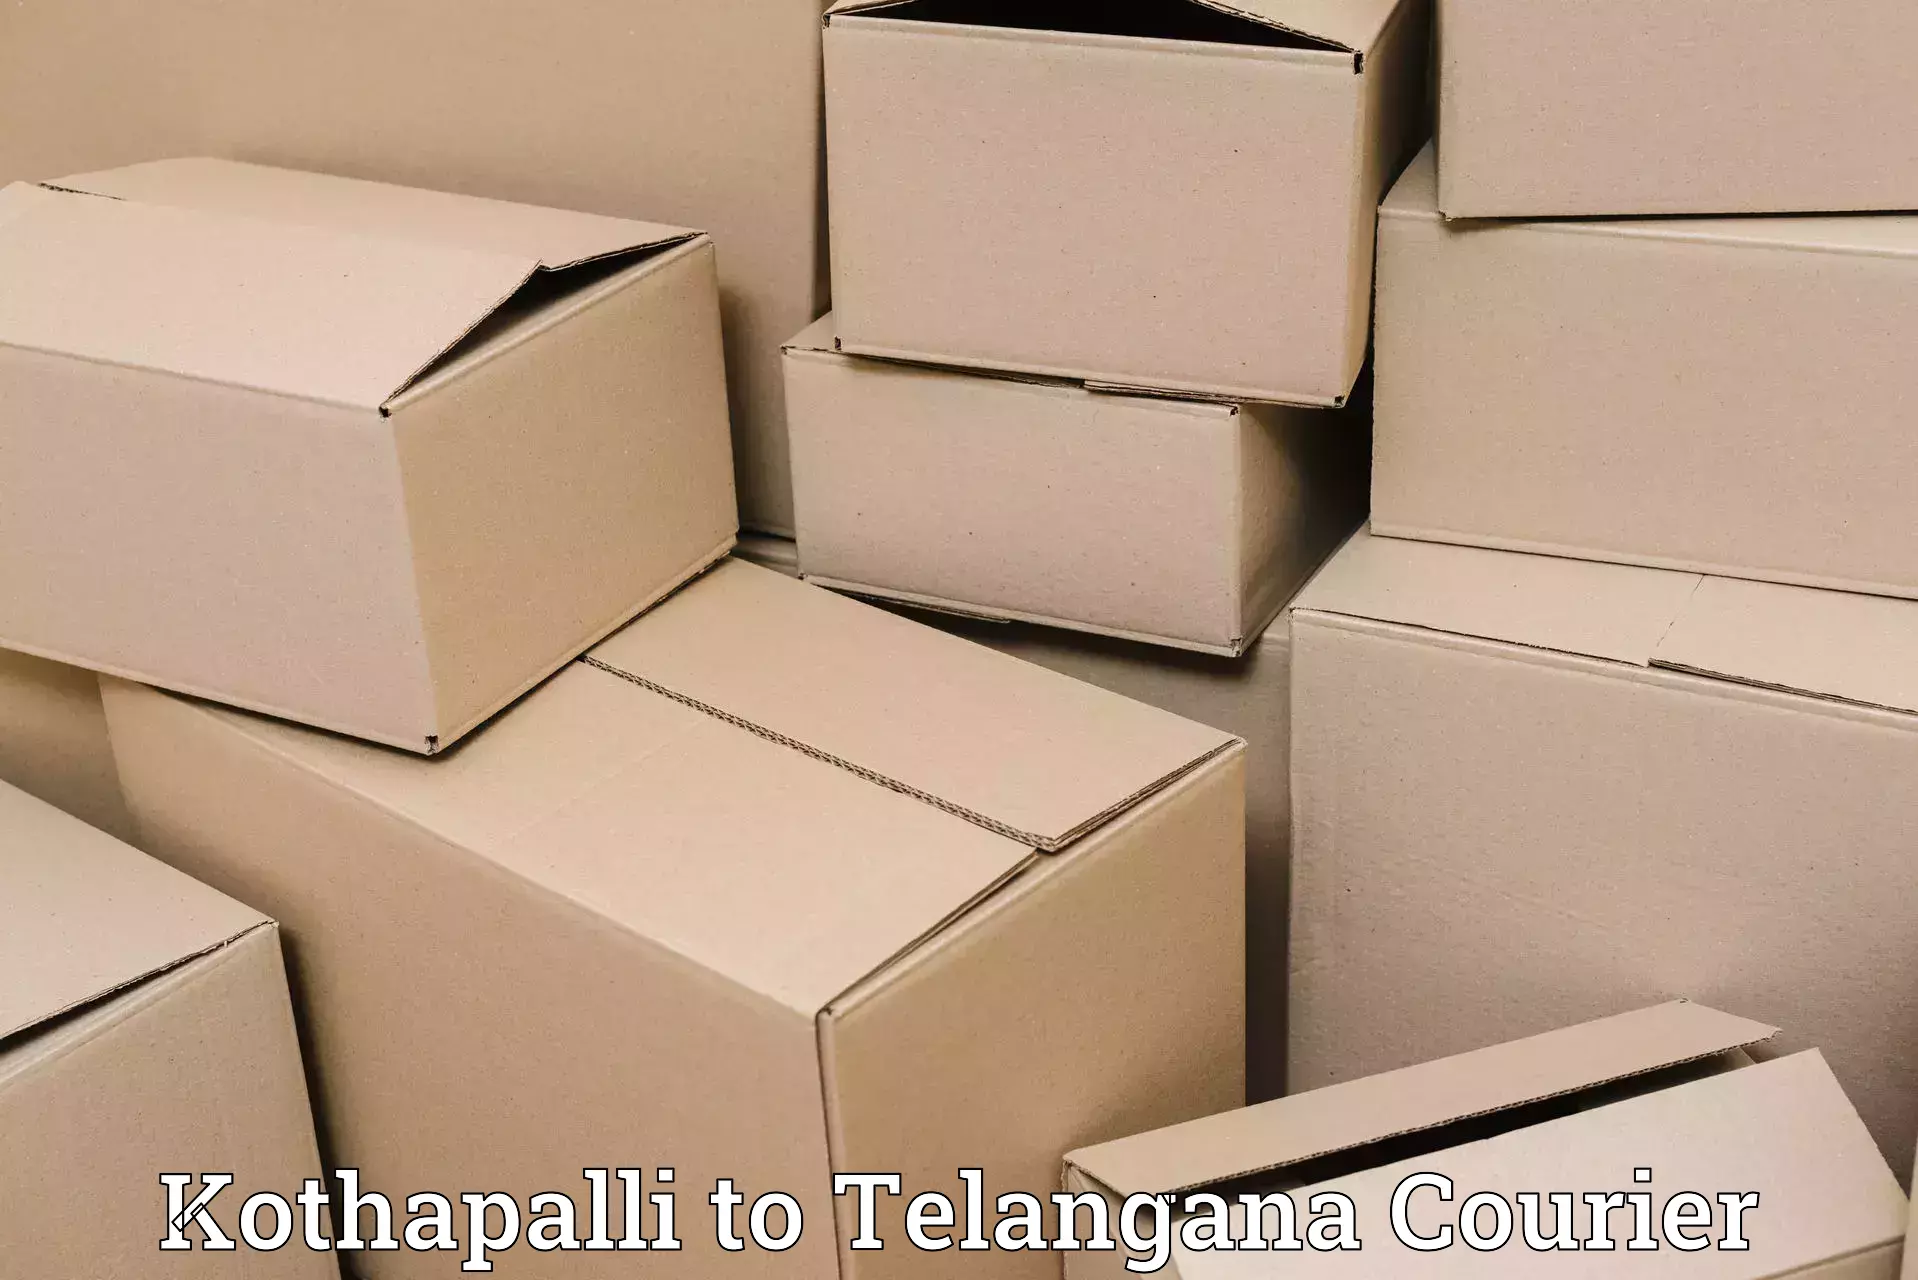 Efficient parcel service Kothapalli to Suryapet